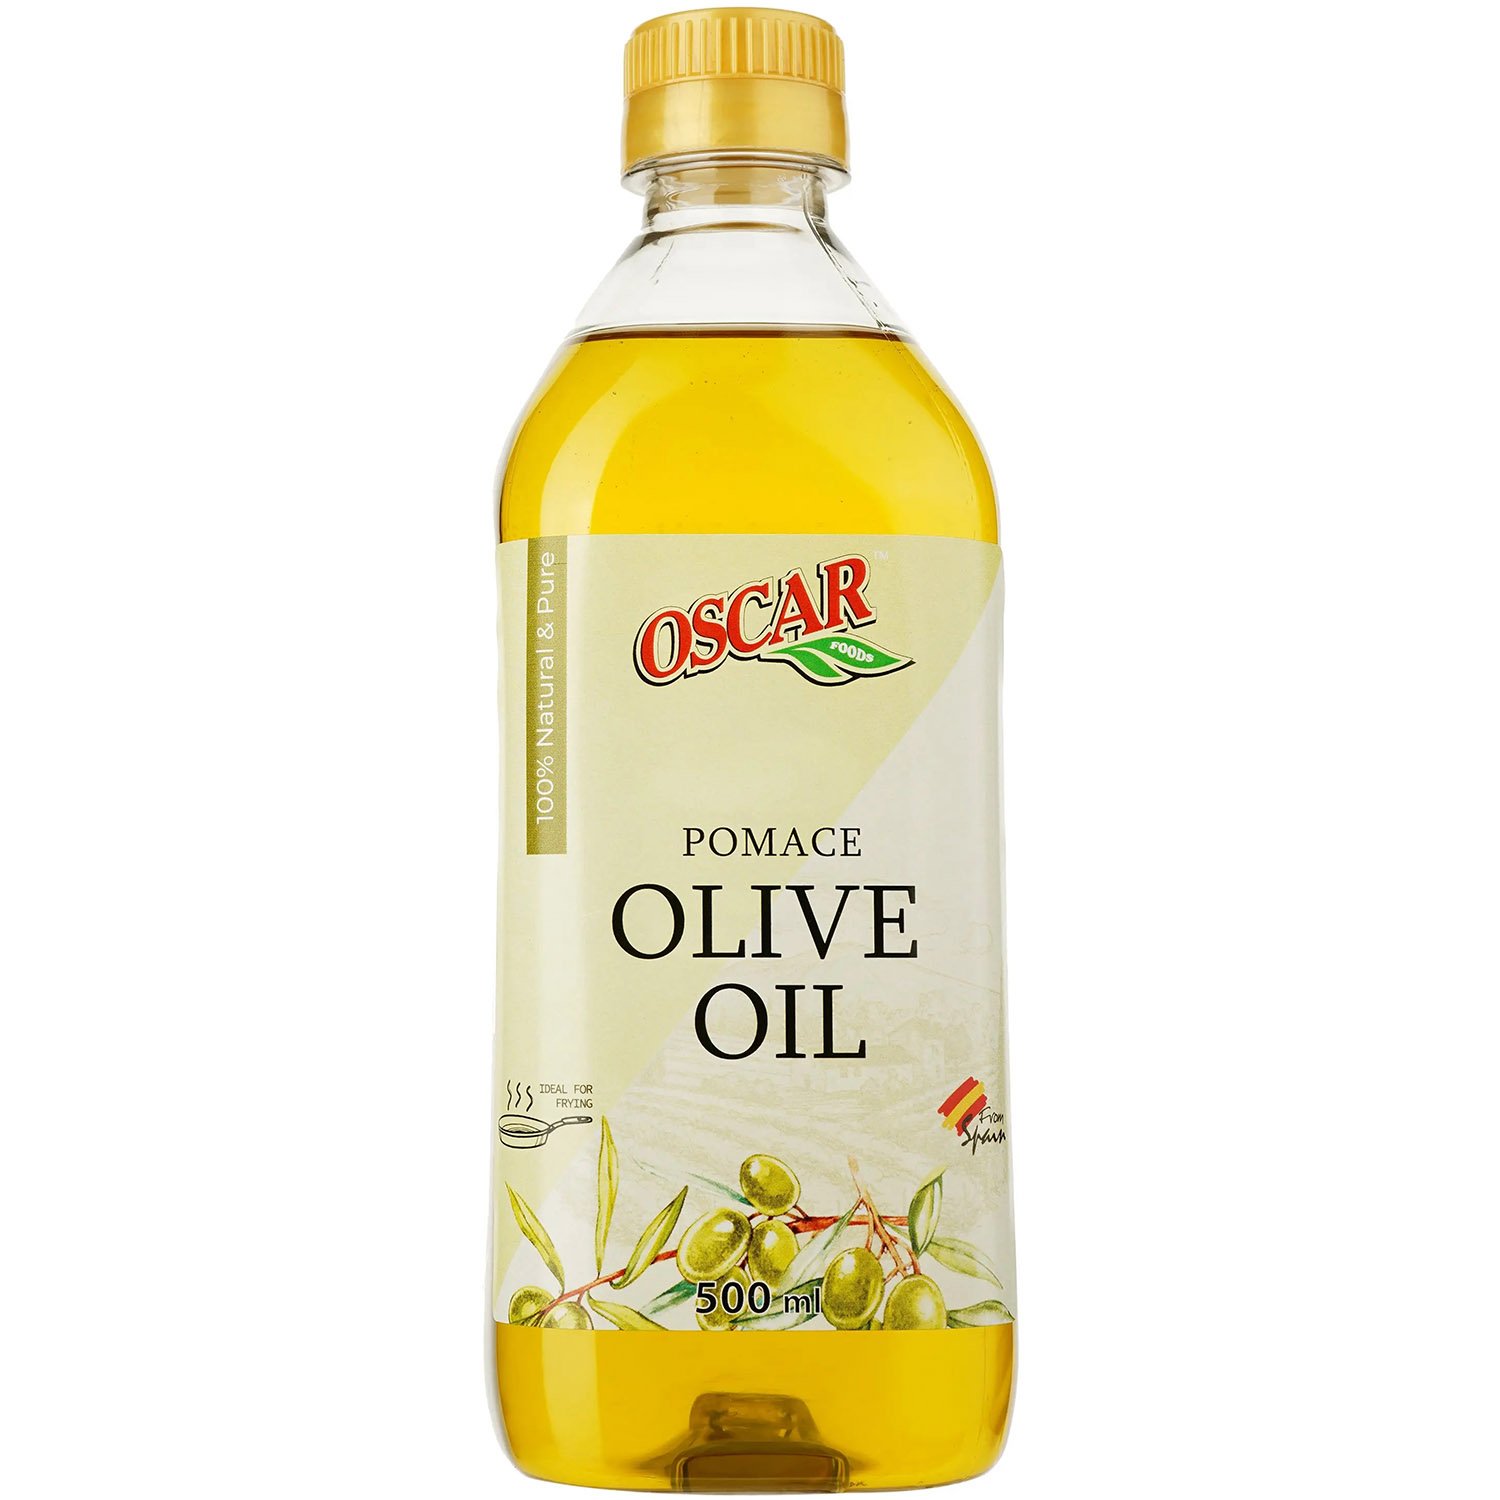 Олія оливкова Oscar Pomace рафінована 500 мл (905722) - фото 1